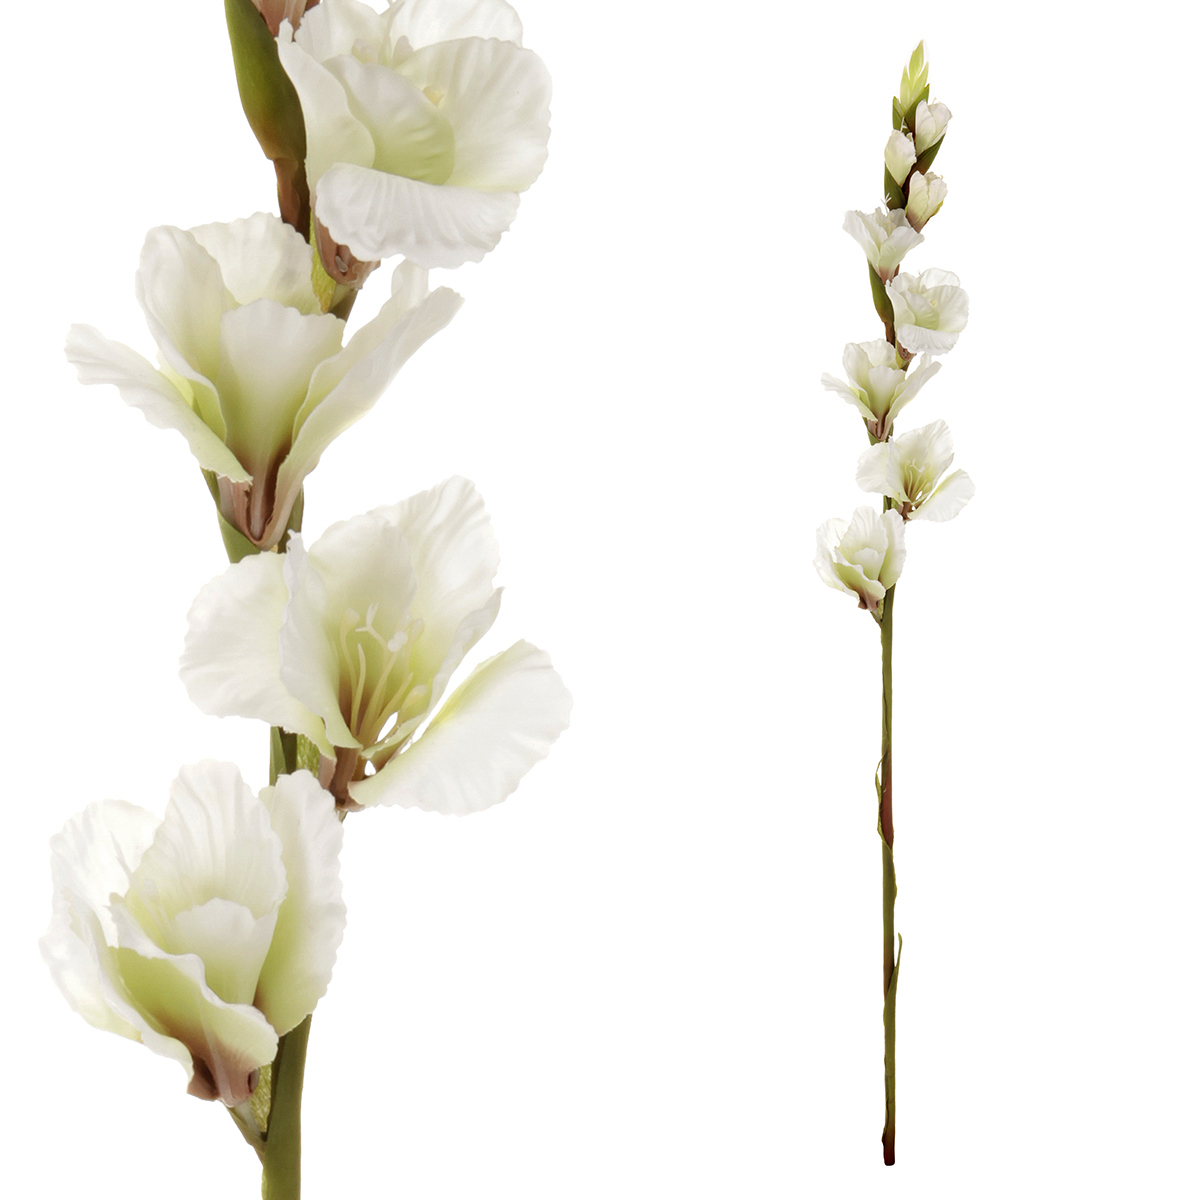 Gladiola, barva bílá. Květina umělá.